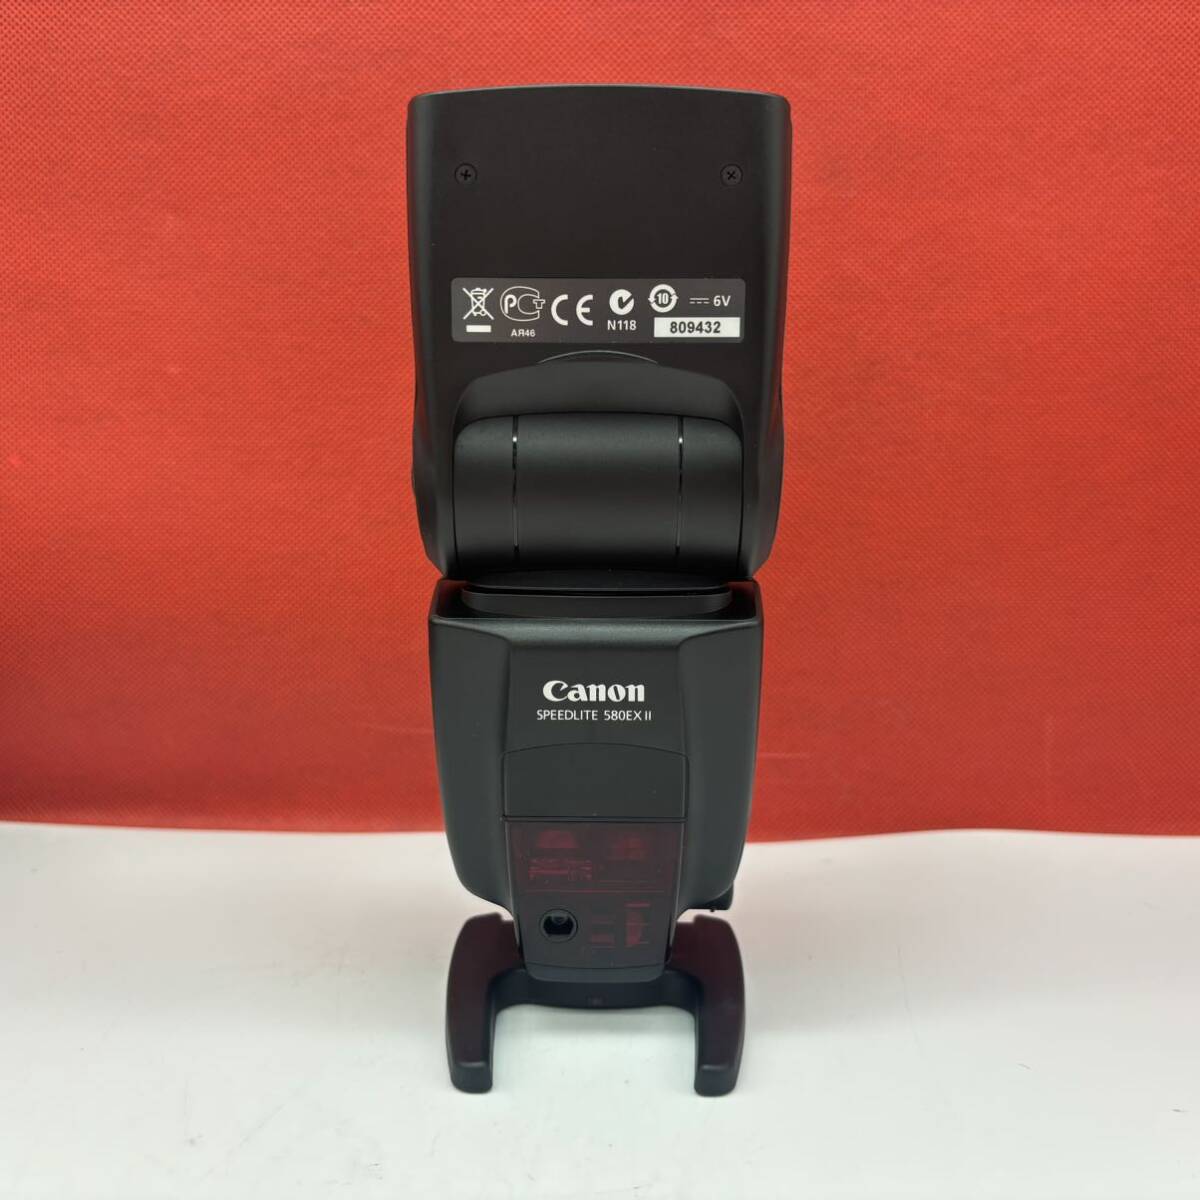 * Canon SPEEDLITE 580EX Ⅱ strobo flash verification settled camera accessory Canon 